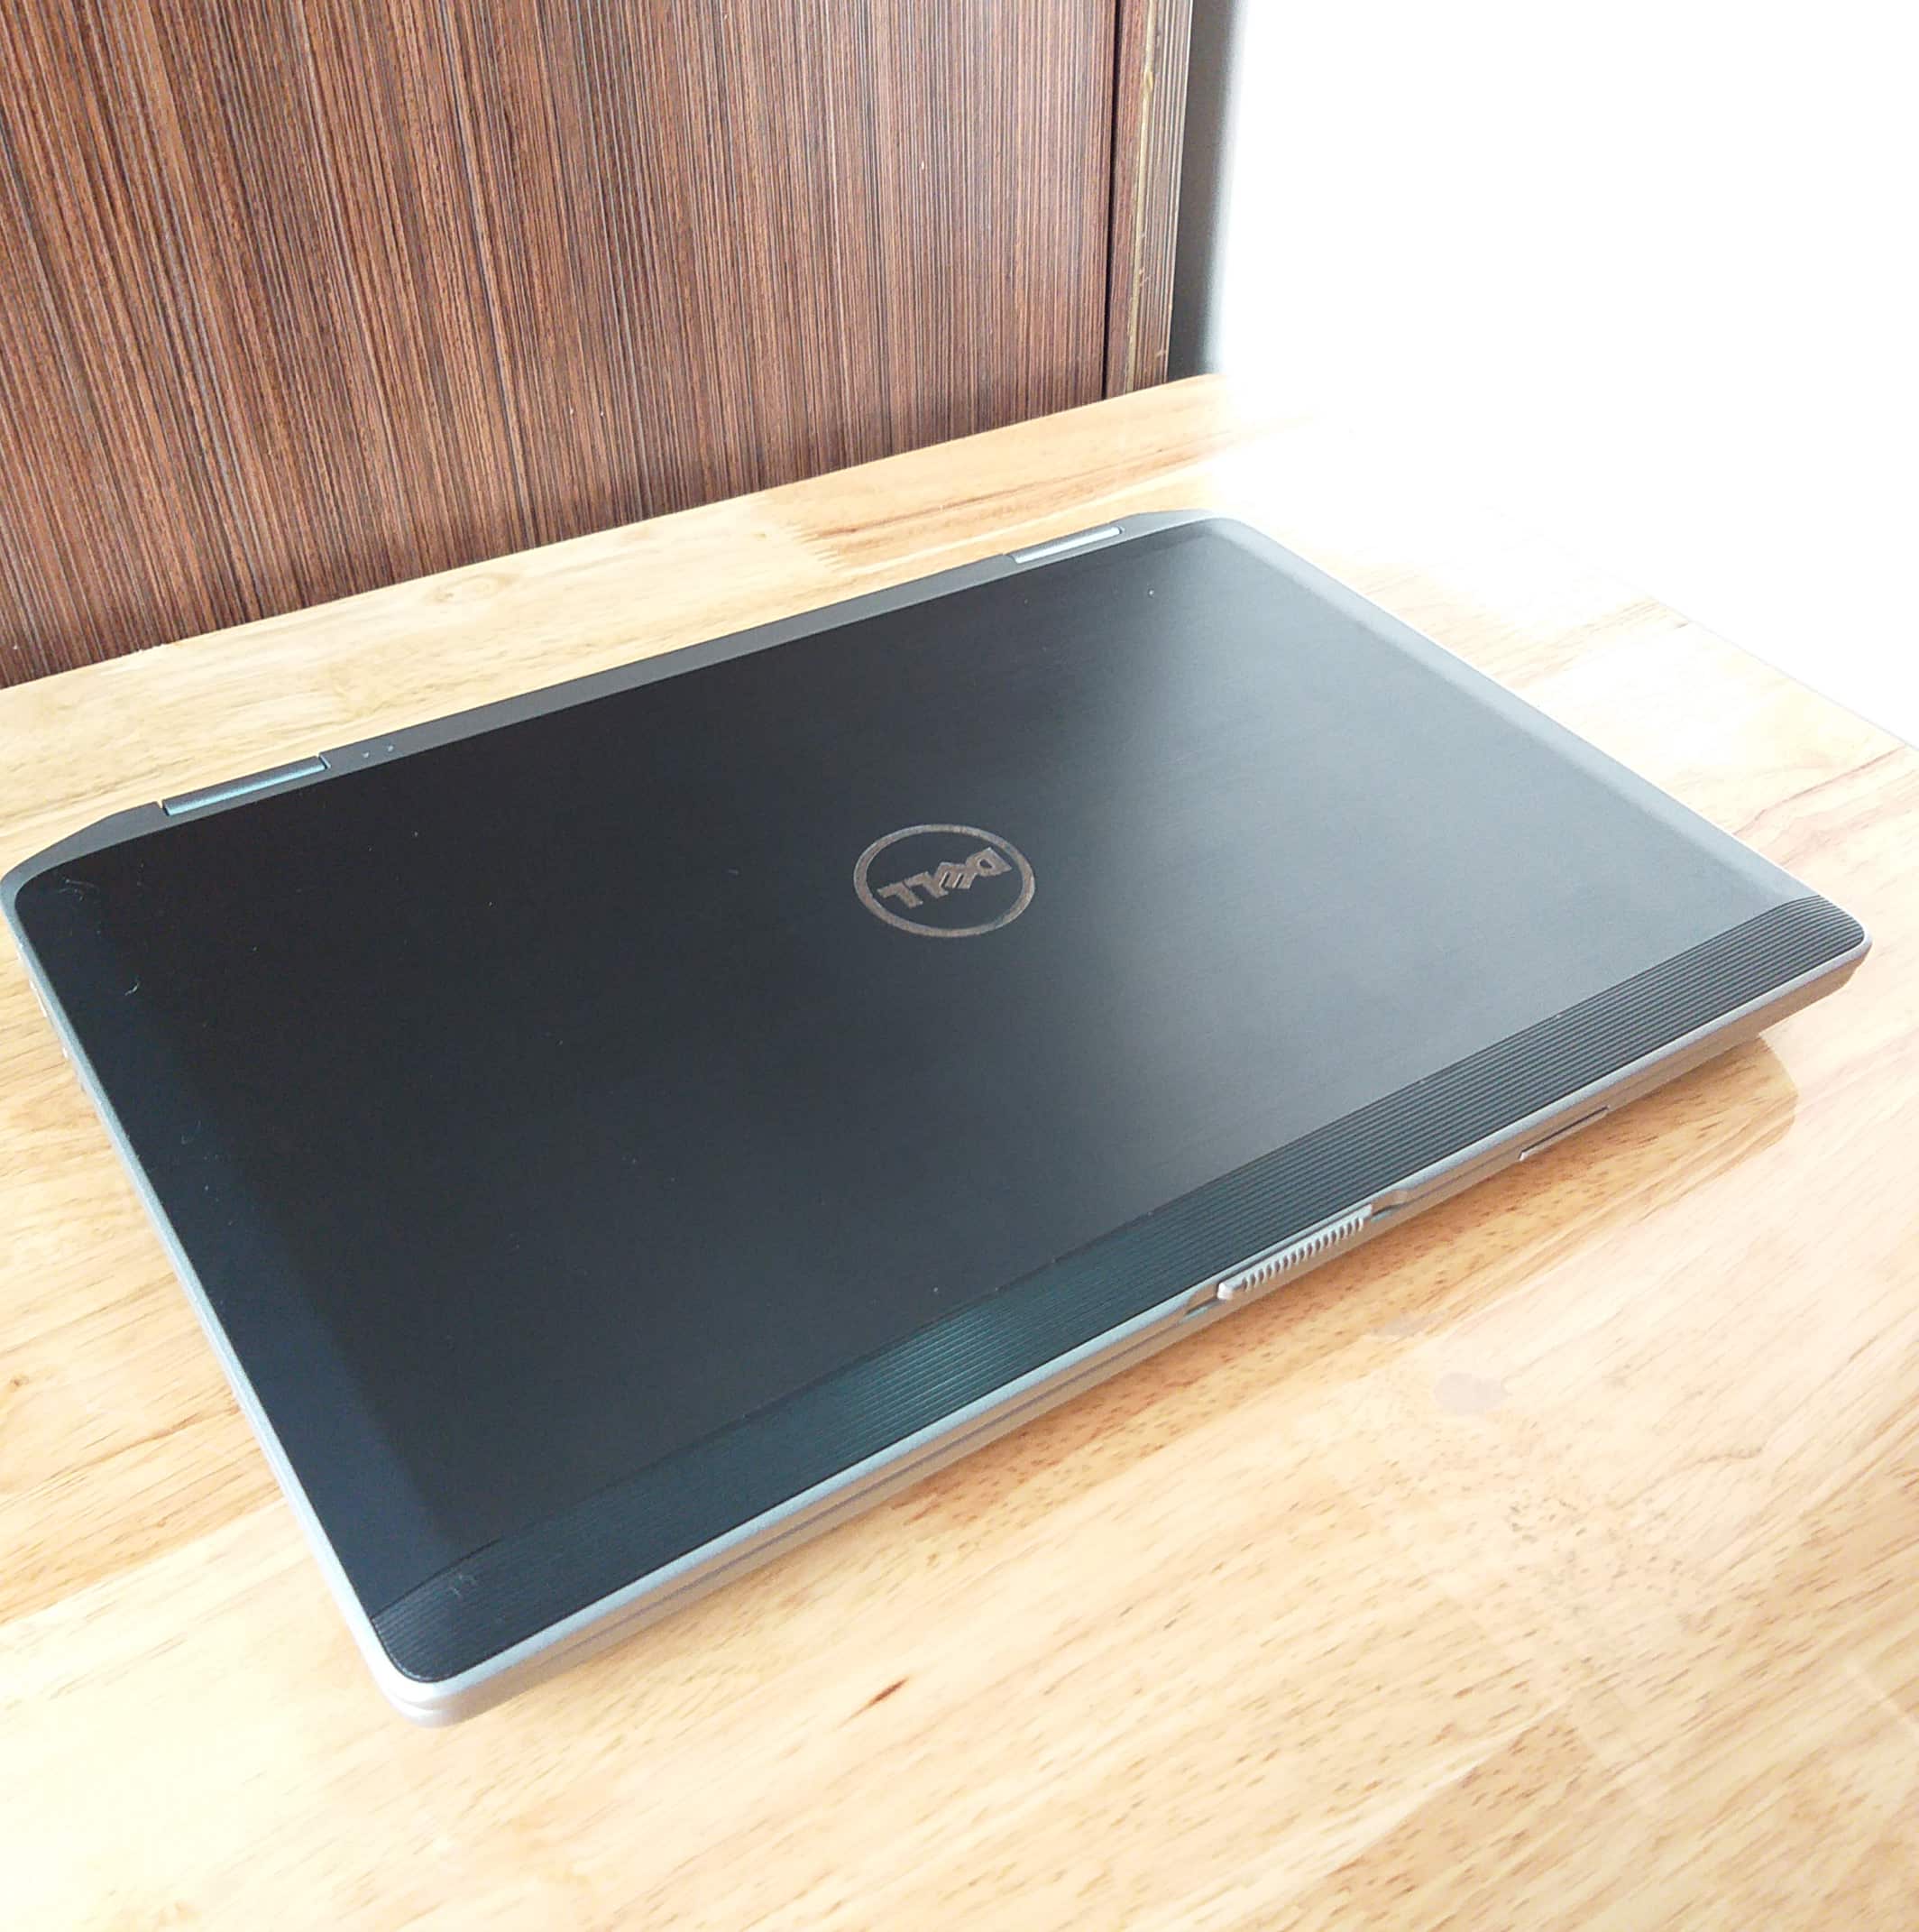 Laptop Dell Latitude E6430, I5 3340M RAM 4GB SSD 128GB